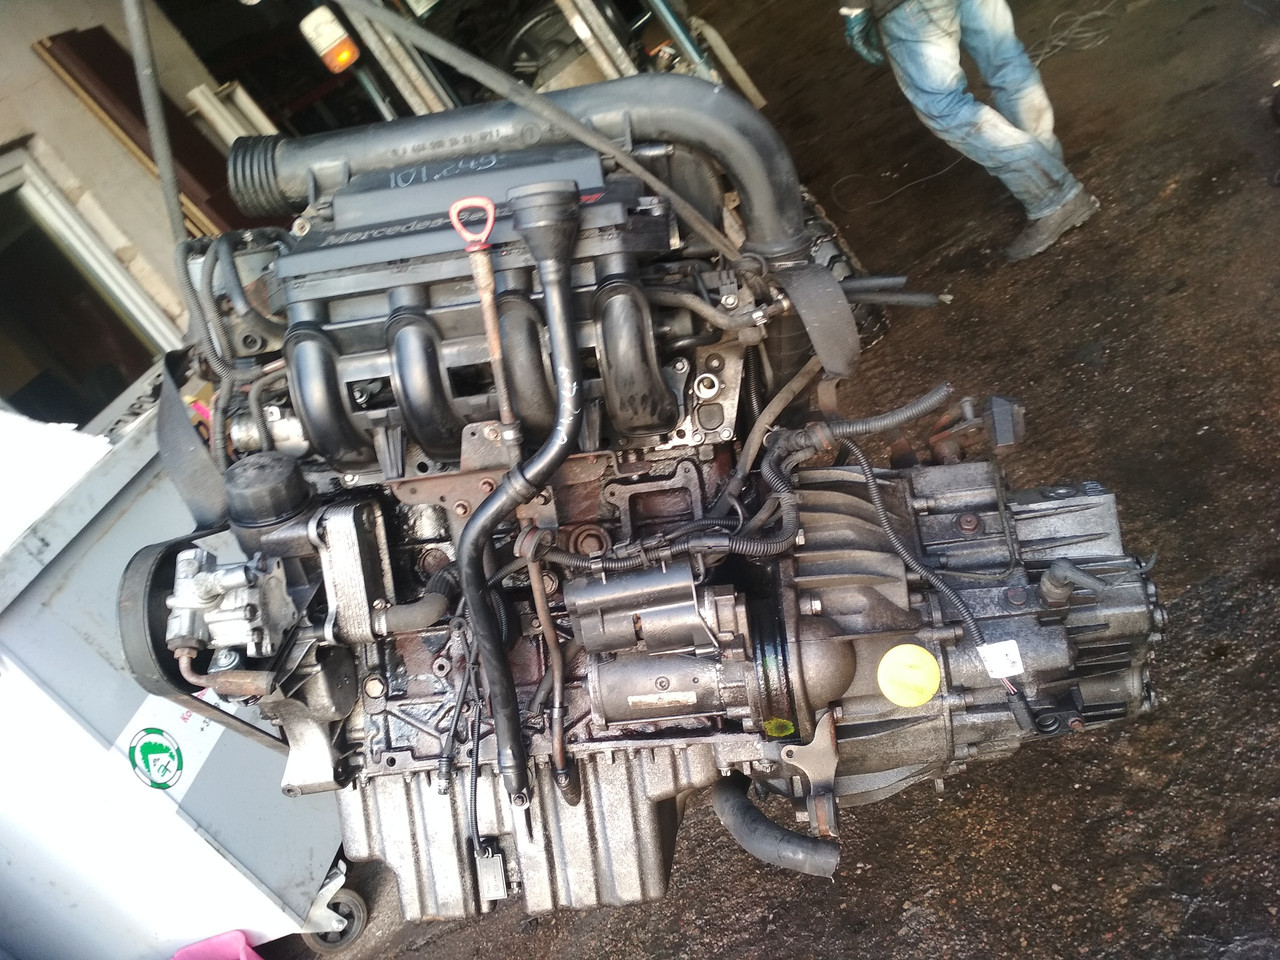 Комплектный двигатель Mercedes Vito 2151см3 CDI 2002 г (OM 611.980), 60-90 kW (82-122 HP)